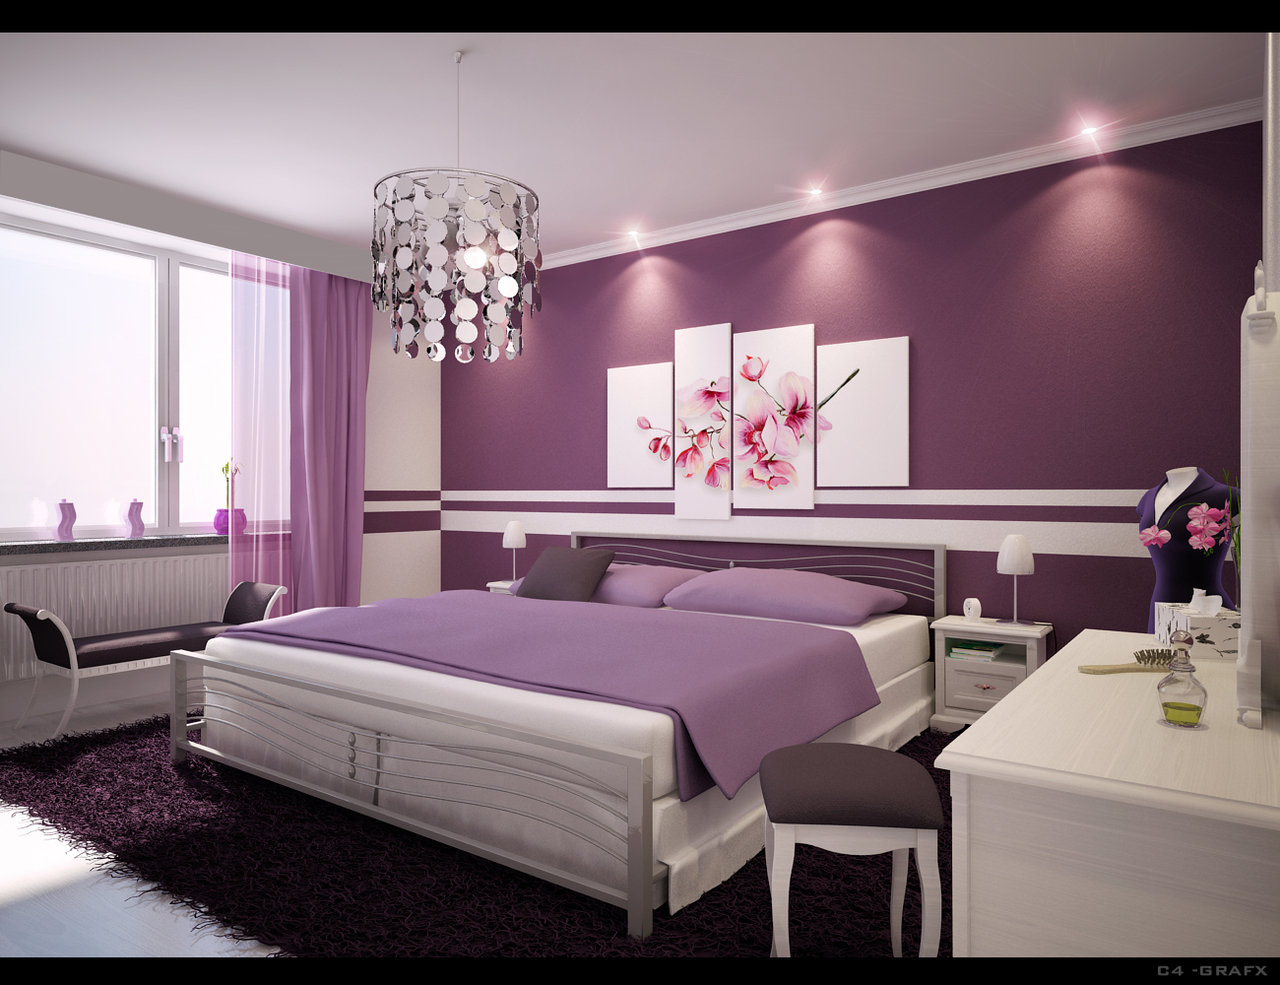 2 Bedroom Apartment Interior Design Ideas